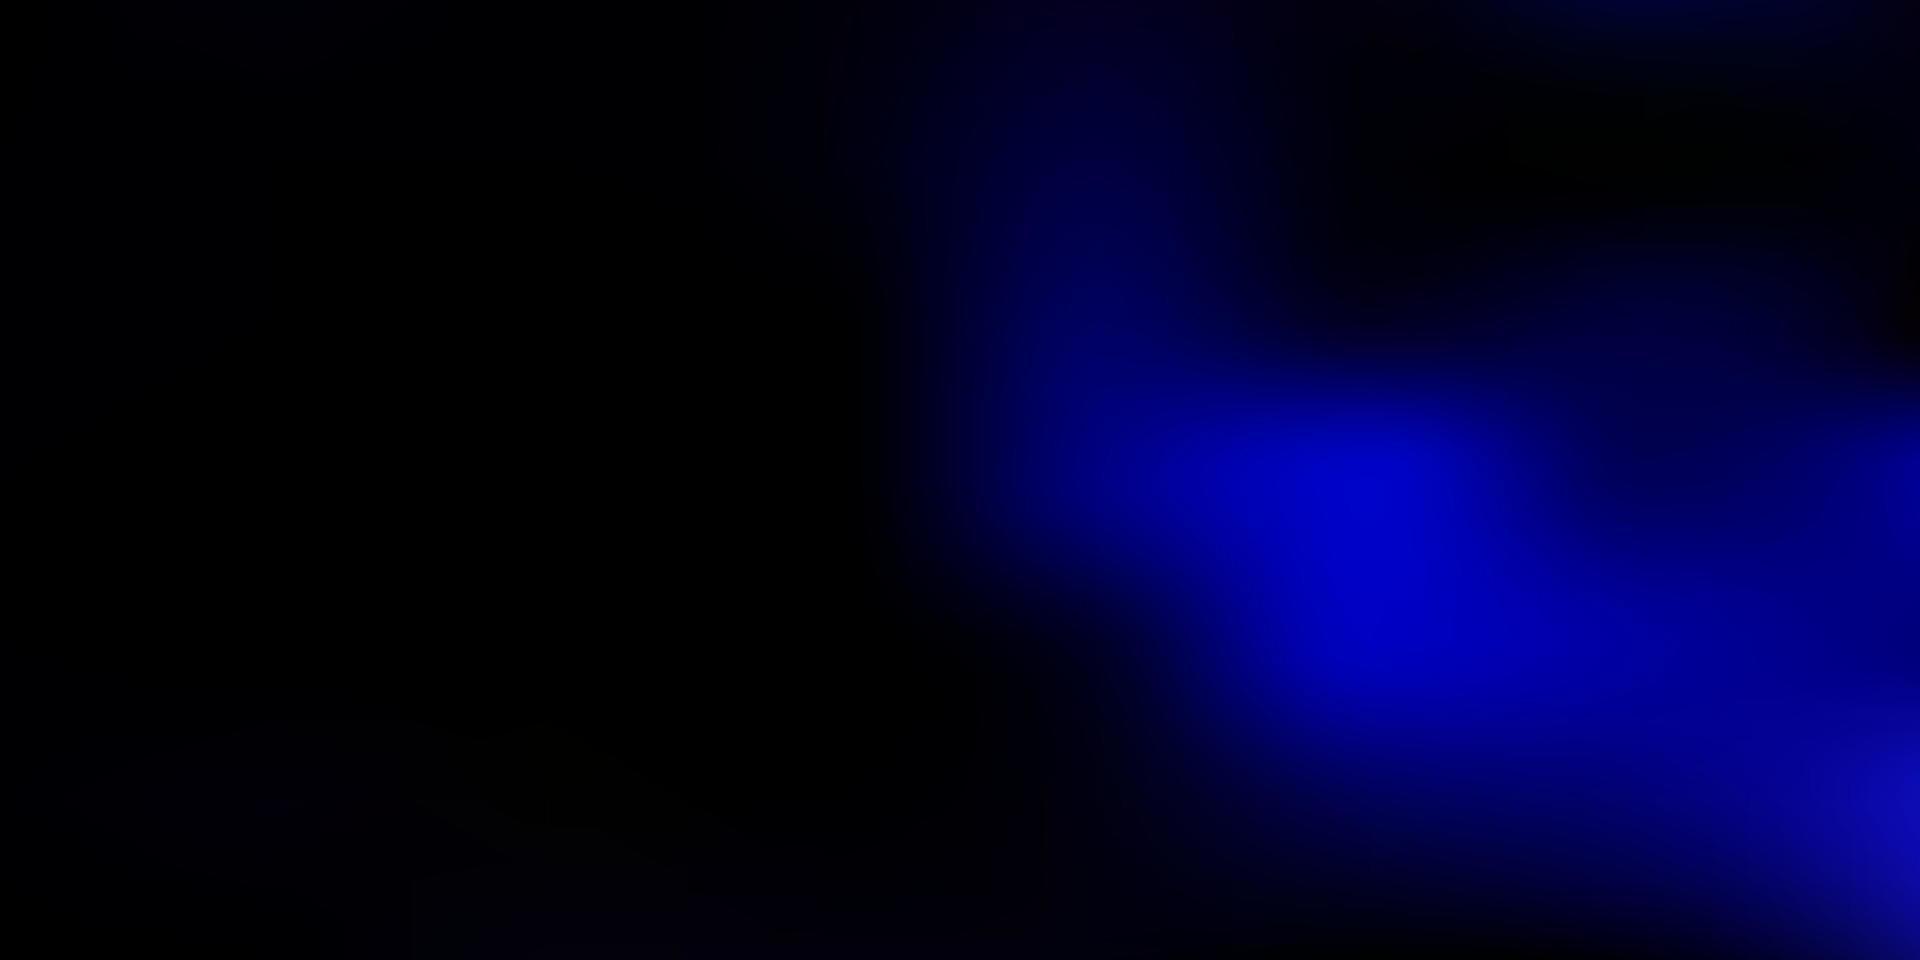 vector azul oscuro fondo borroso.